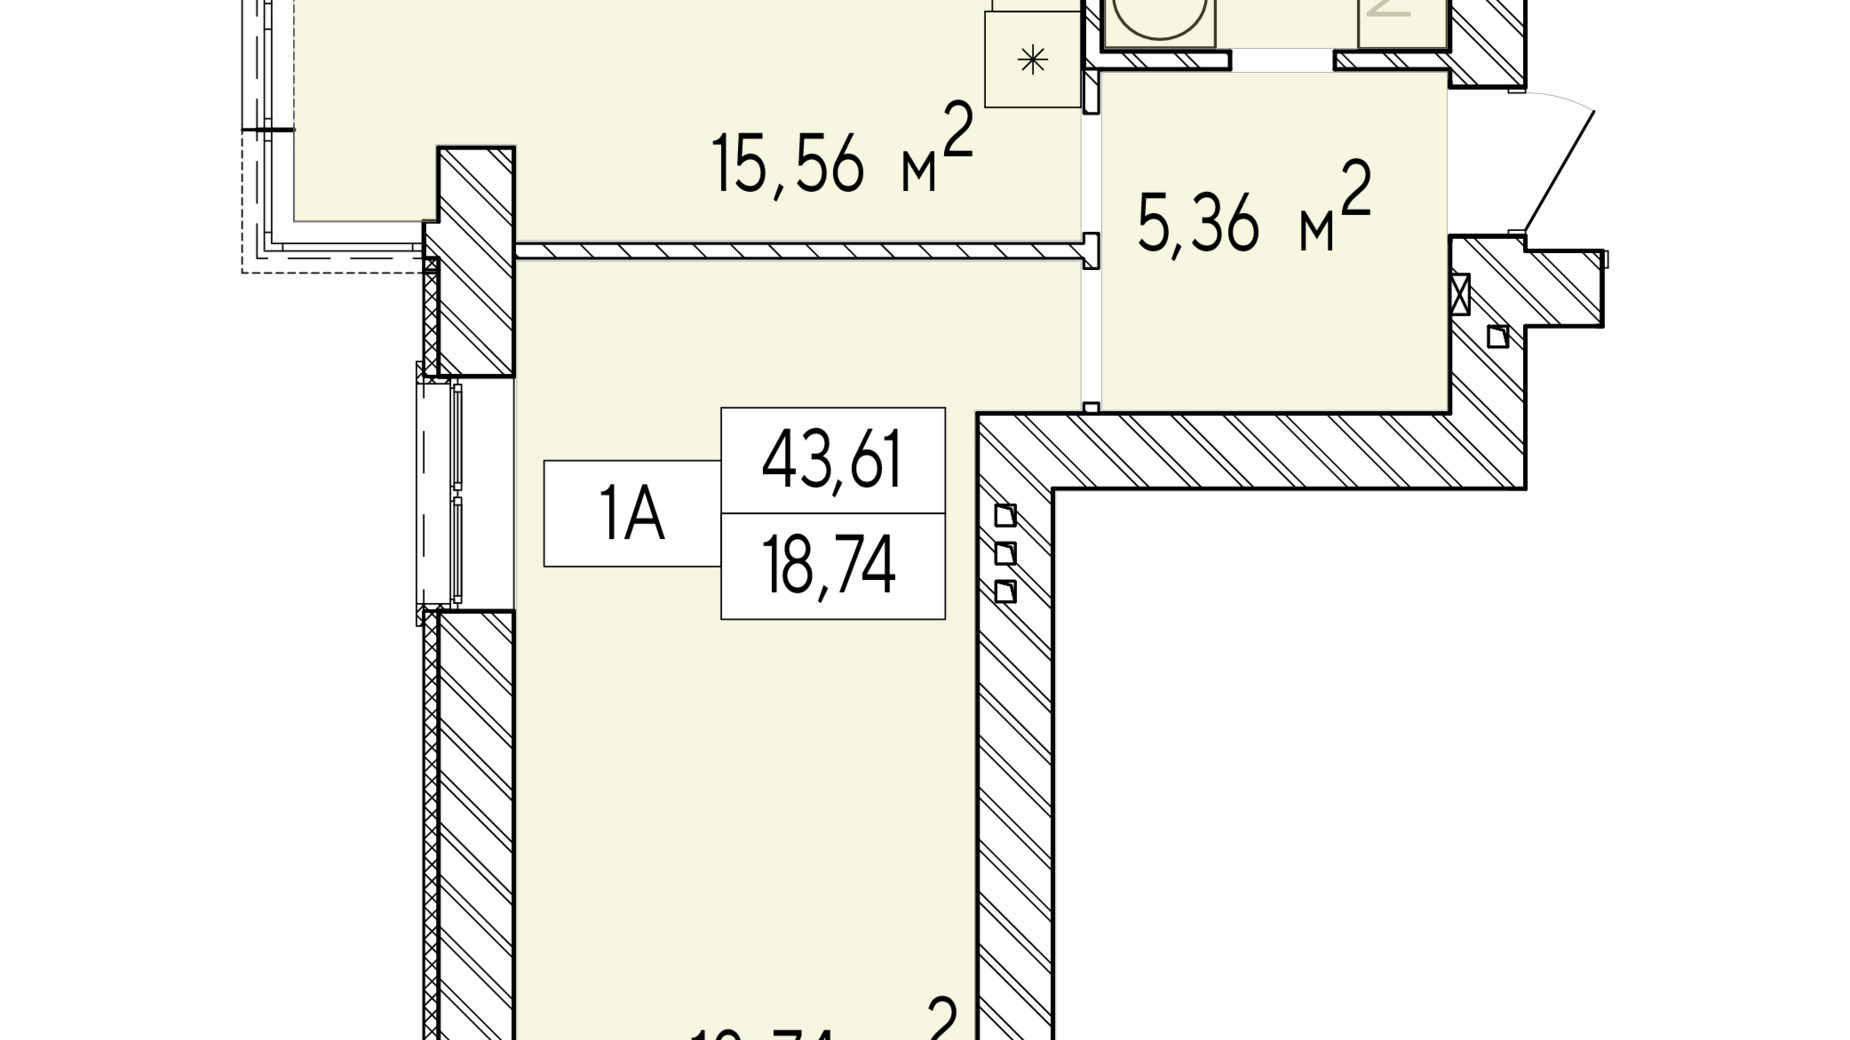 Планировка 1-комнатной квартиры в ЖК Фаворит Premium 43.61 м², фото 548425